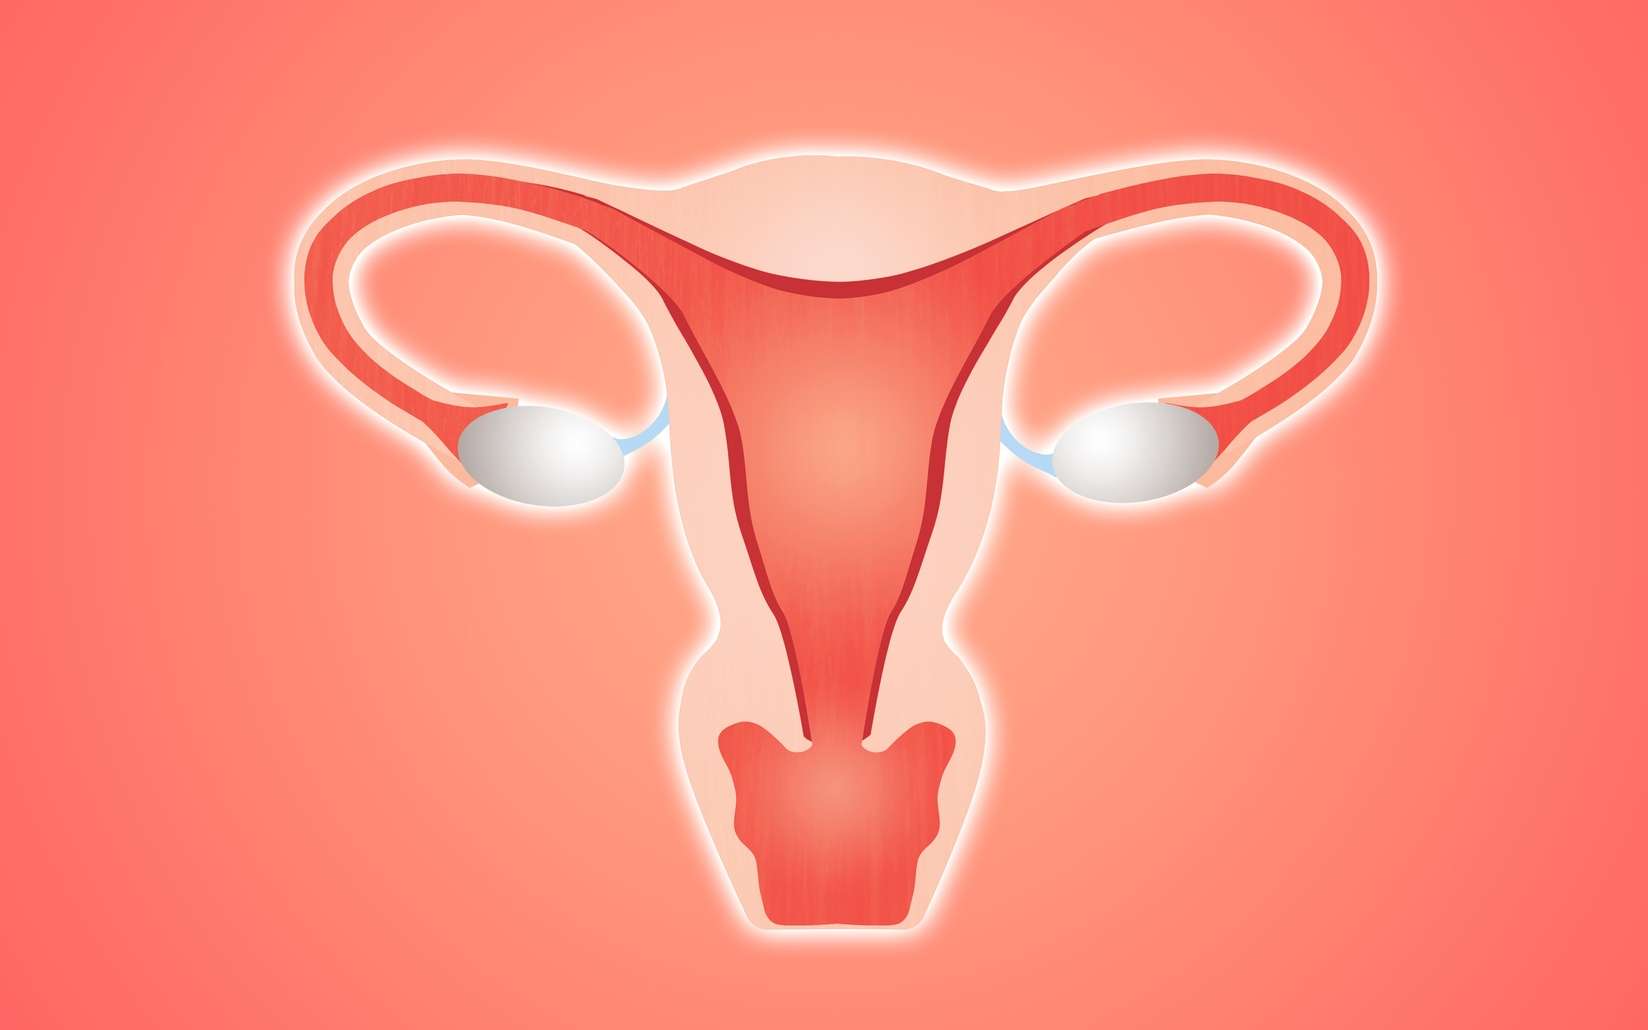 L’appareil reproducteur féminin compte deux ovaires. © sognolucido, Fotolia